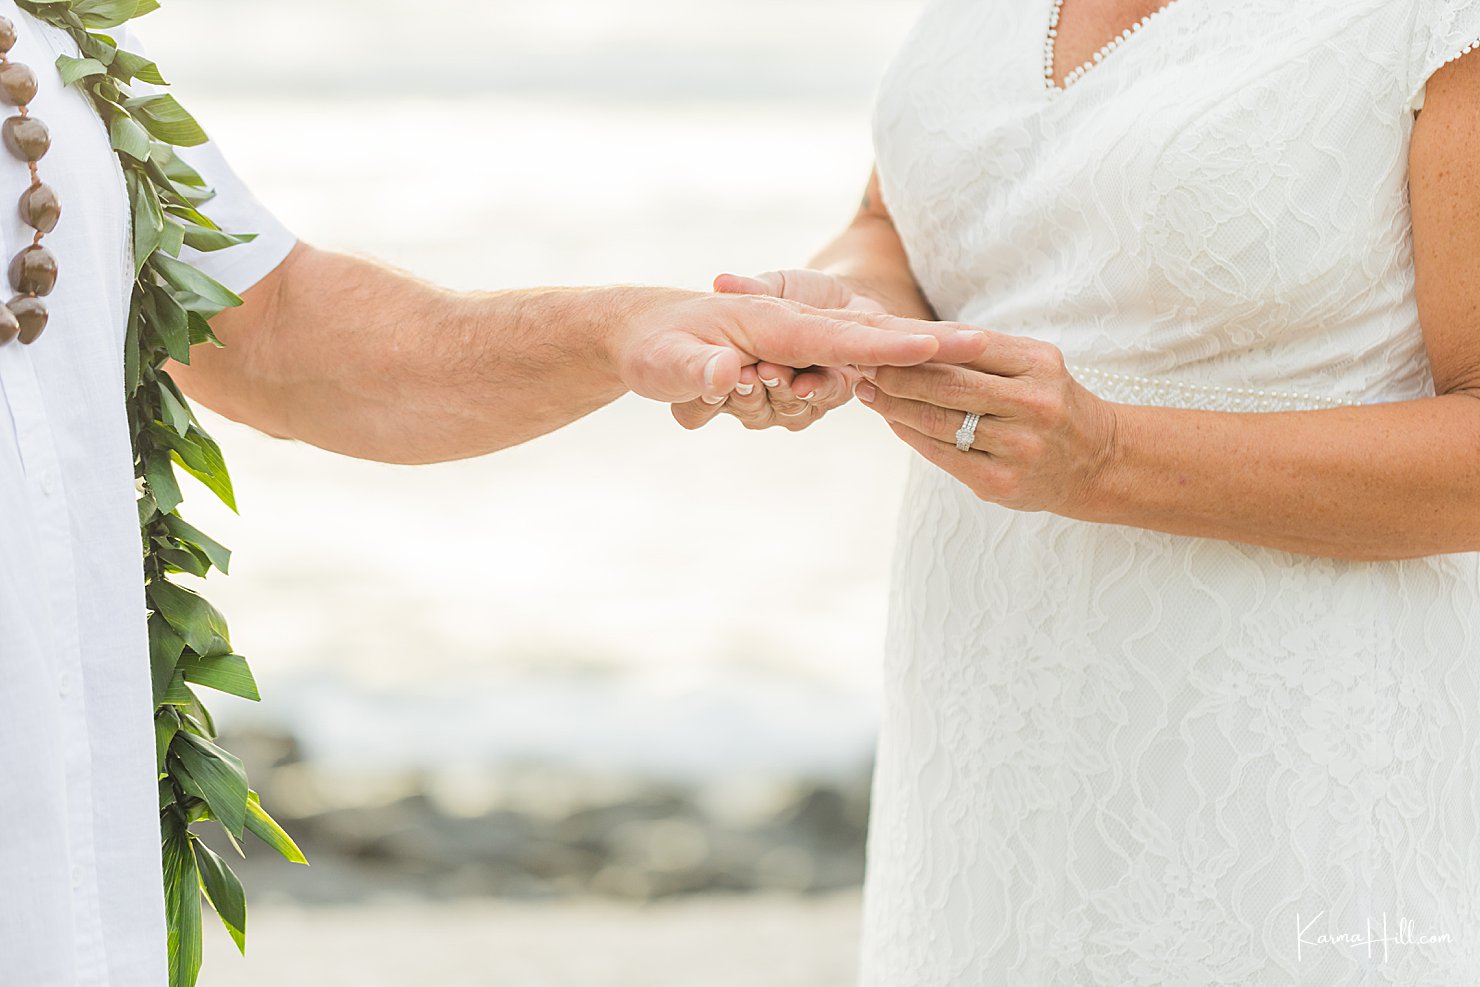 wedding in hawaii 